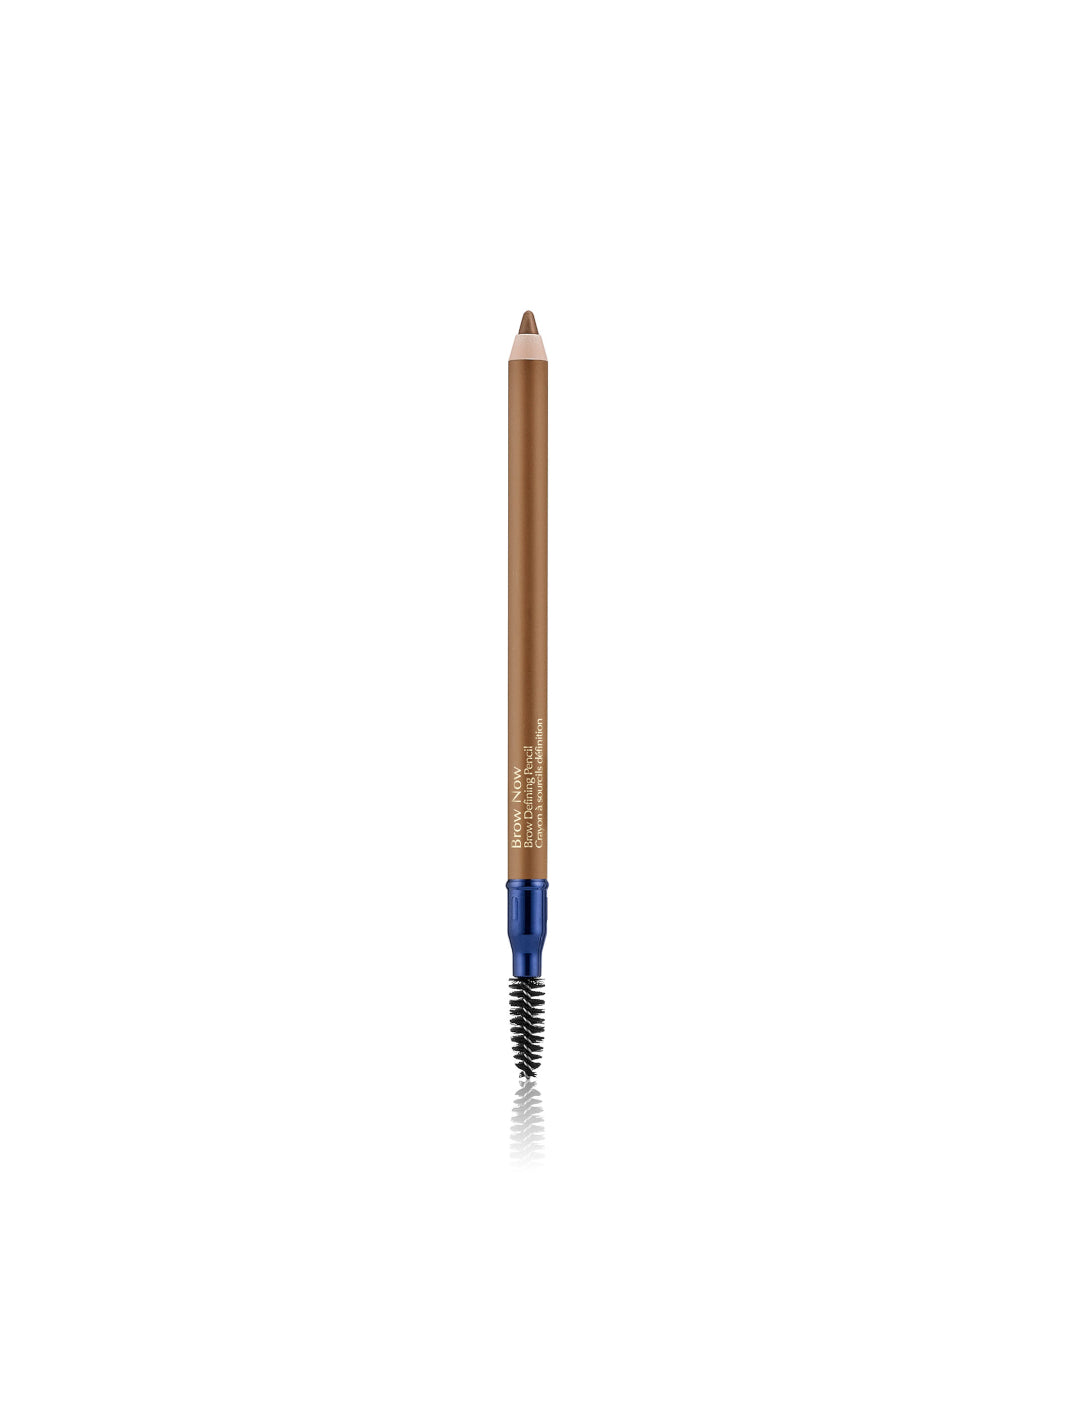 Estée Lauder Brow Now Defining Pencil